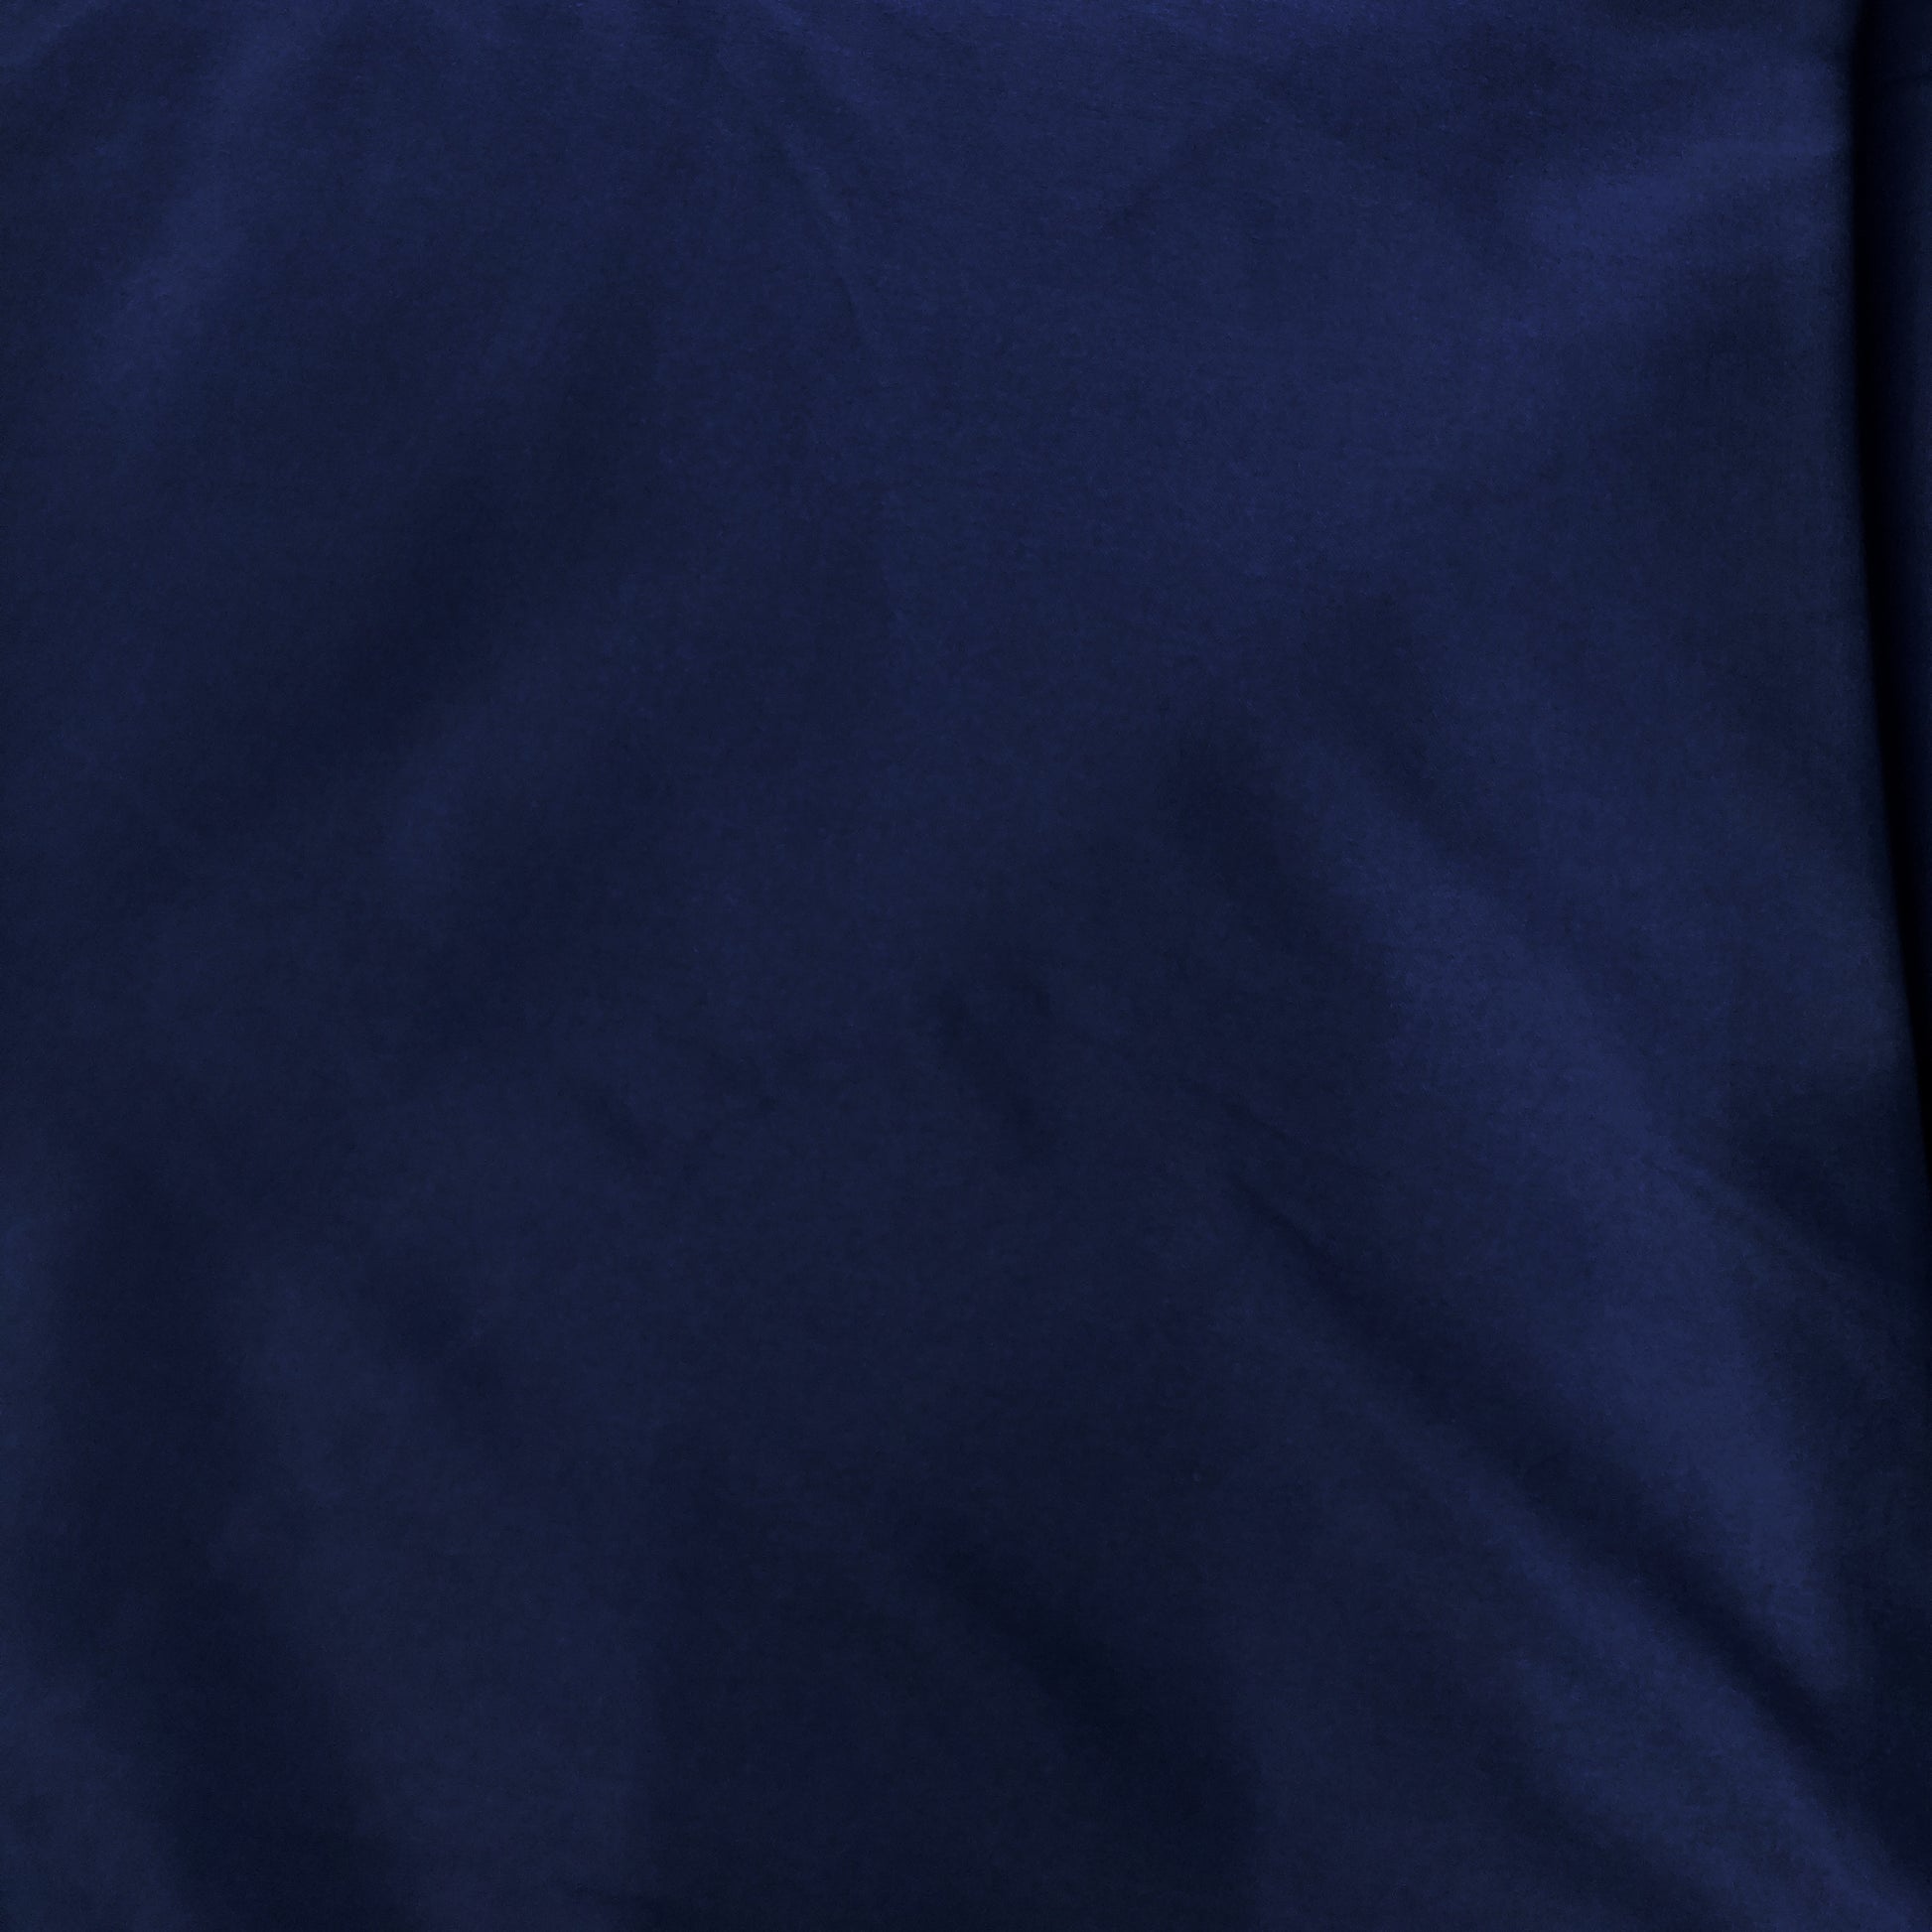 Midnight Blue Solid Lycra Fabric - TradeUNO